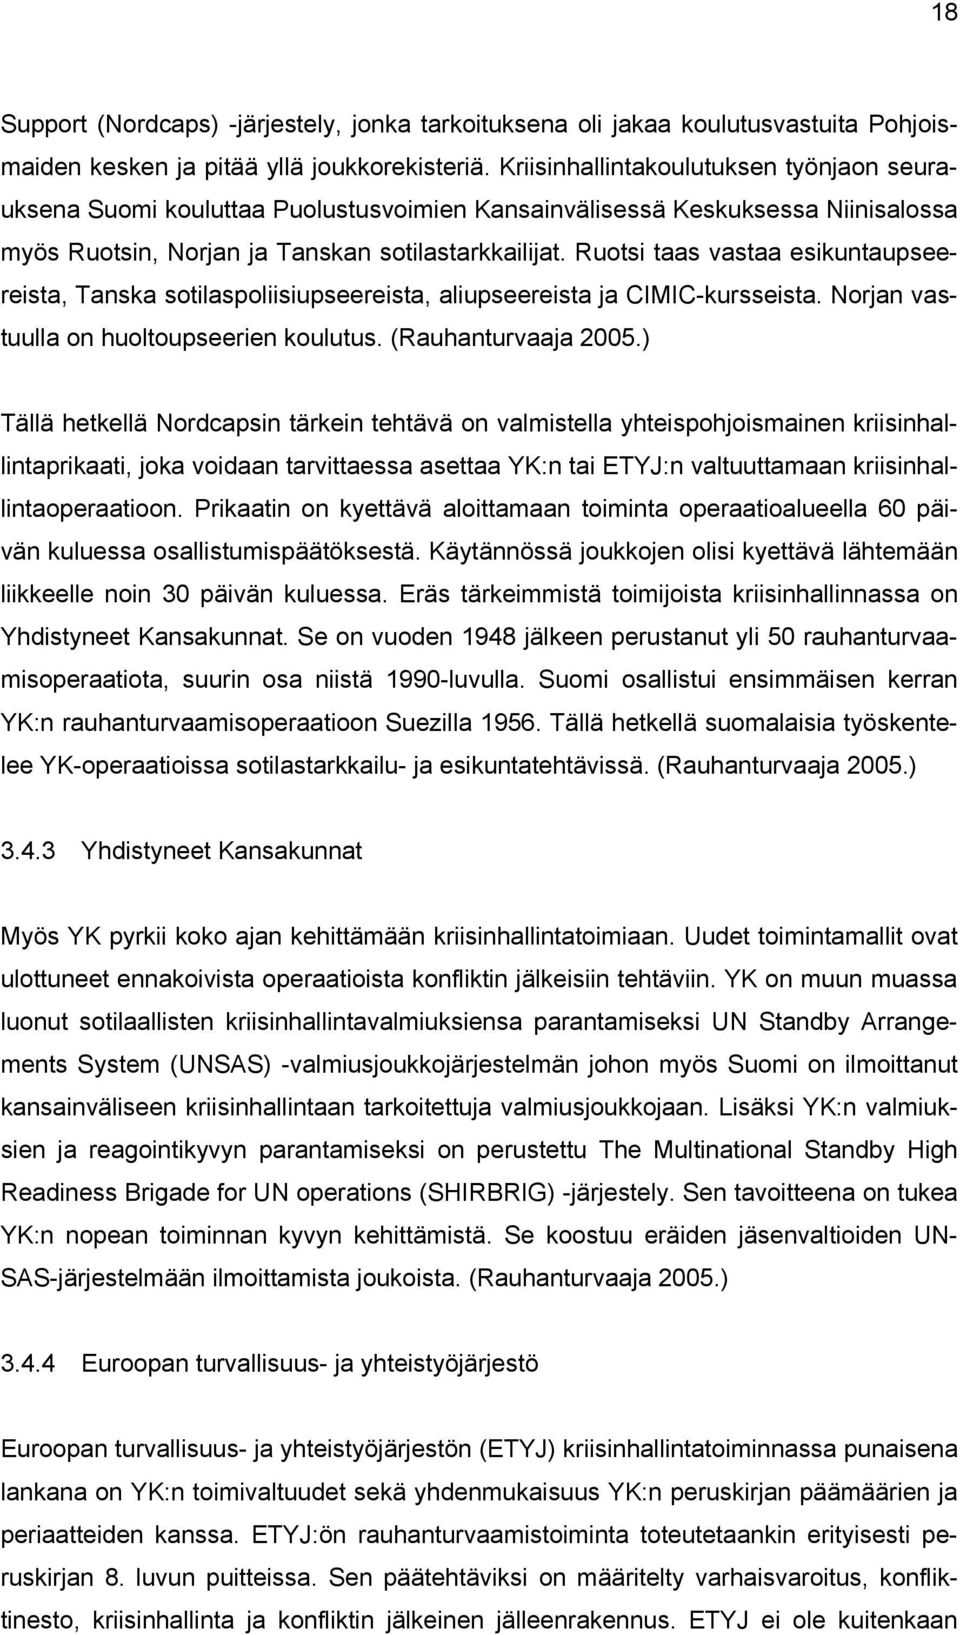 Ruotsi taas vastaa esikuntaupseereista, Tanska sotilaspoliisiupseereista, aliupseereista ja CIMIC-kursseista. Norjan vastuulla on huoltoupseerien koulutus. (Rauhanturvaaja 2005.